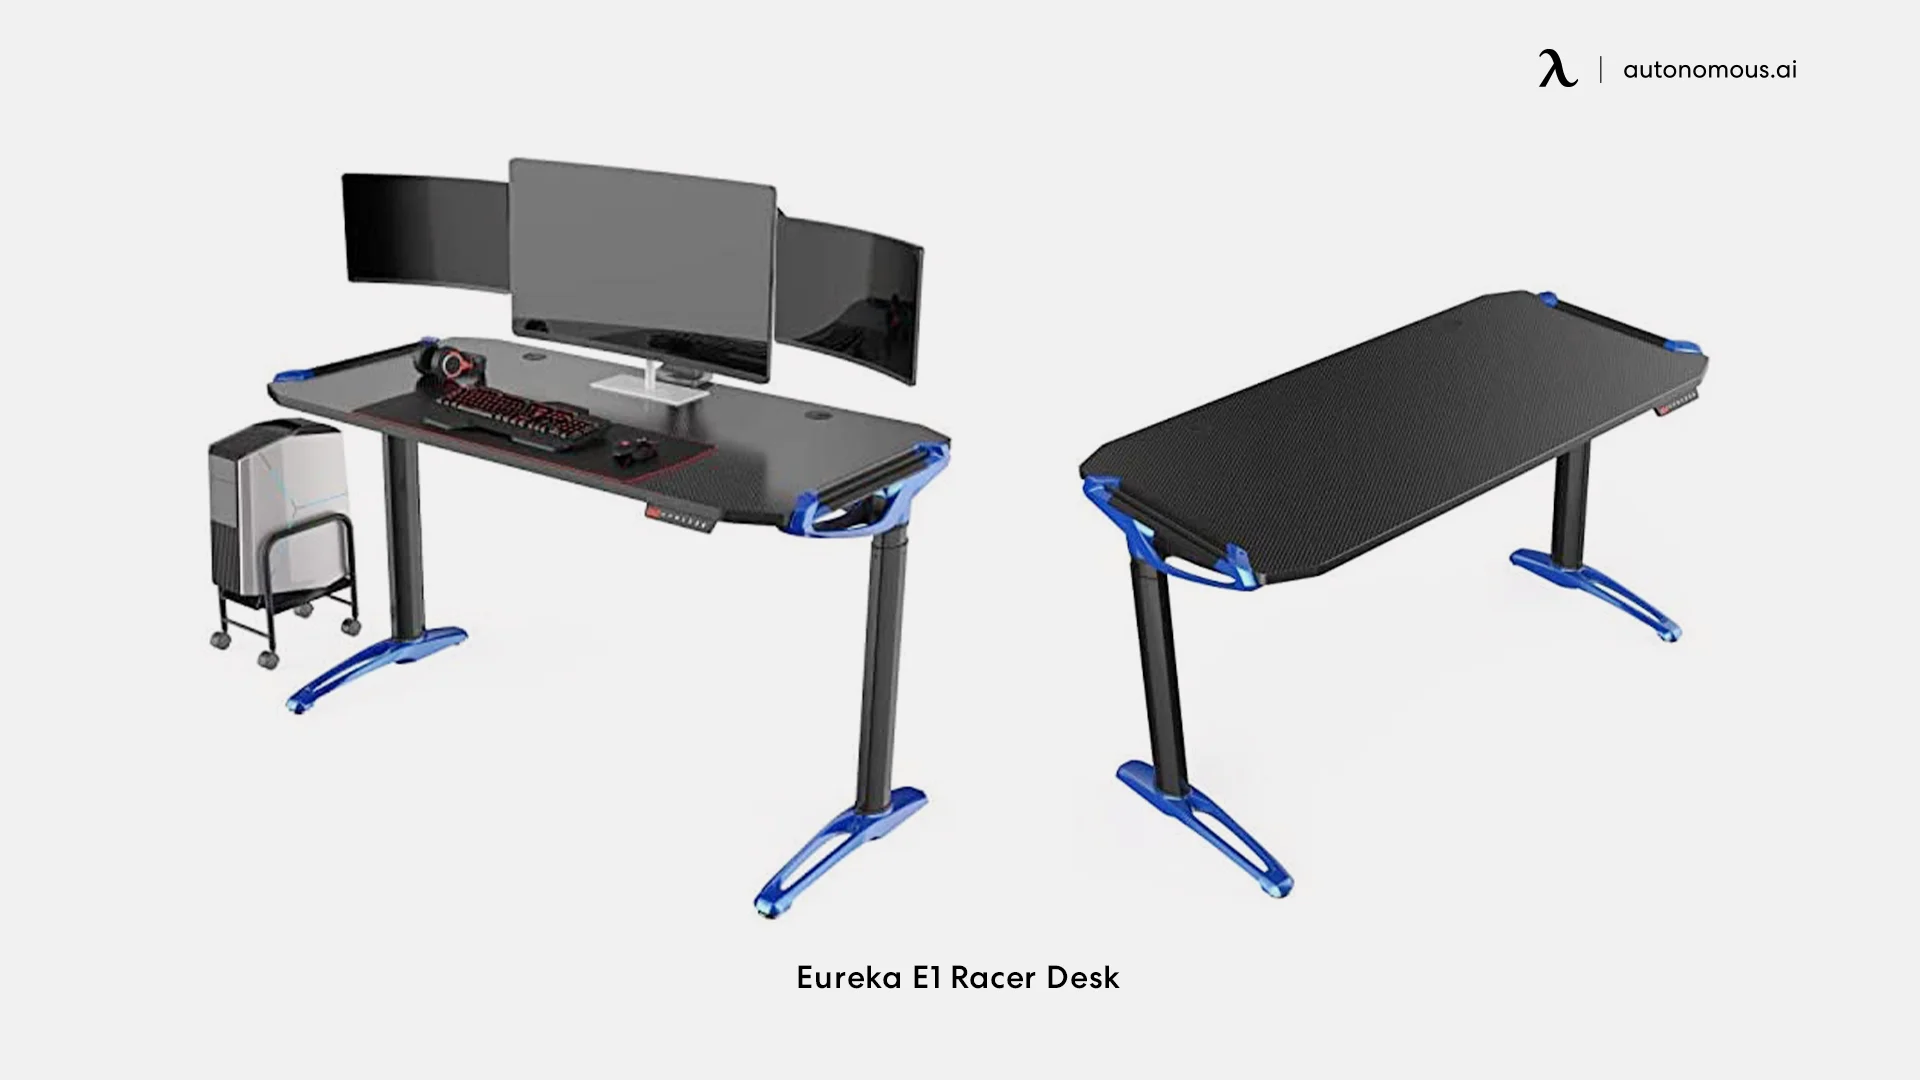 Eureka E1 Racer Desk